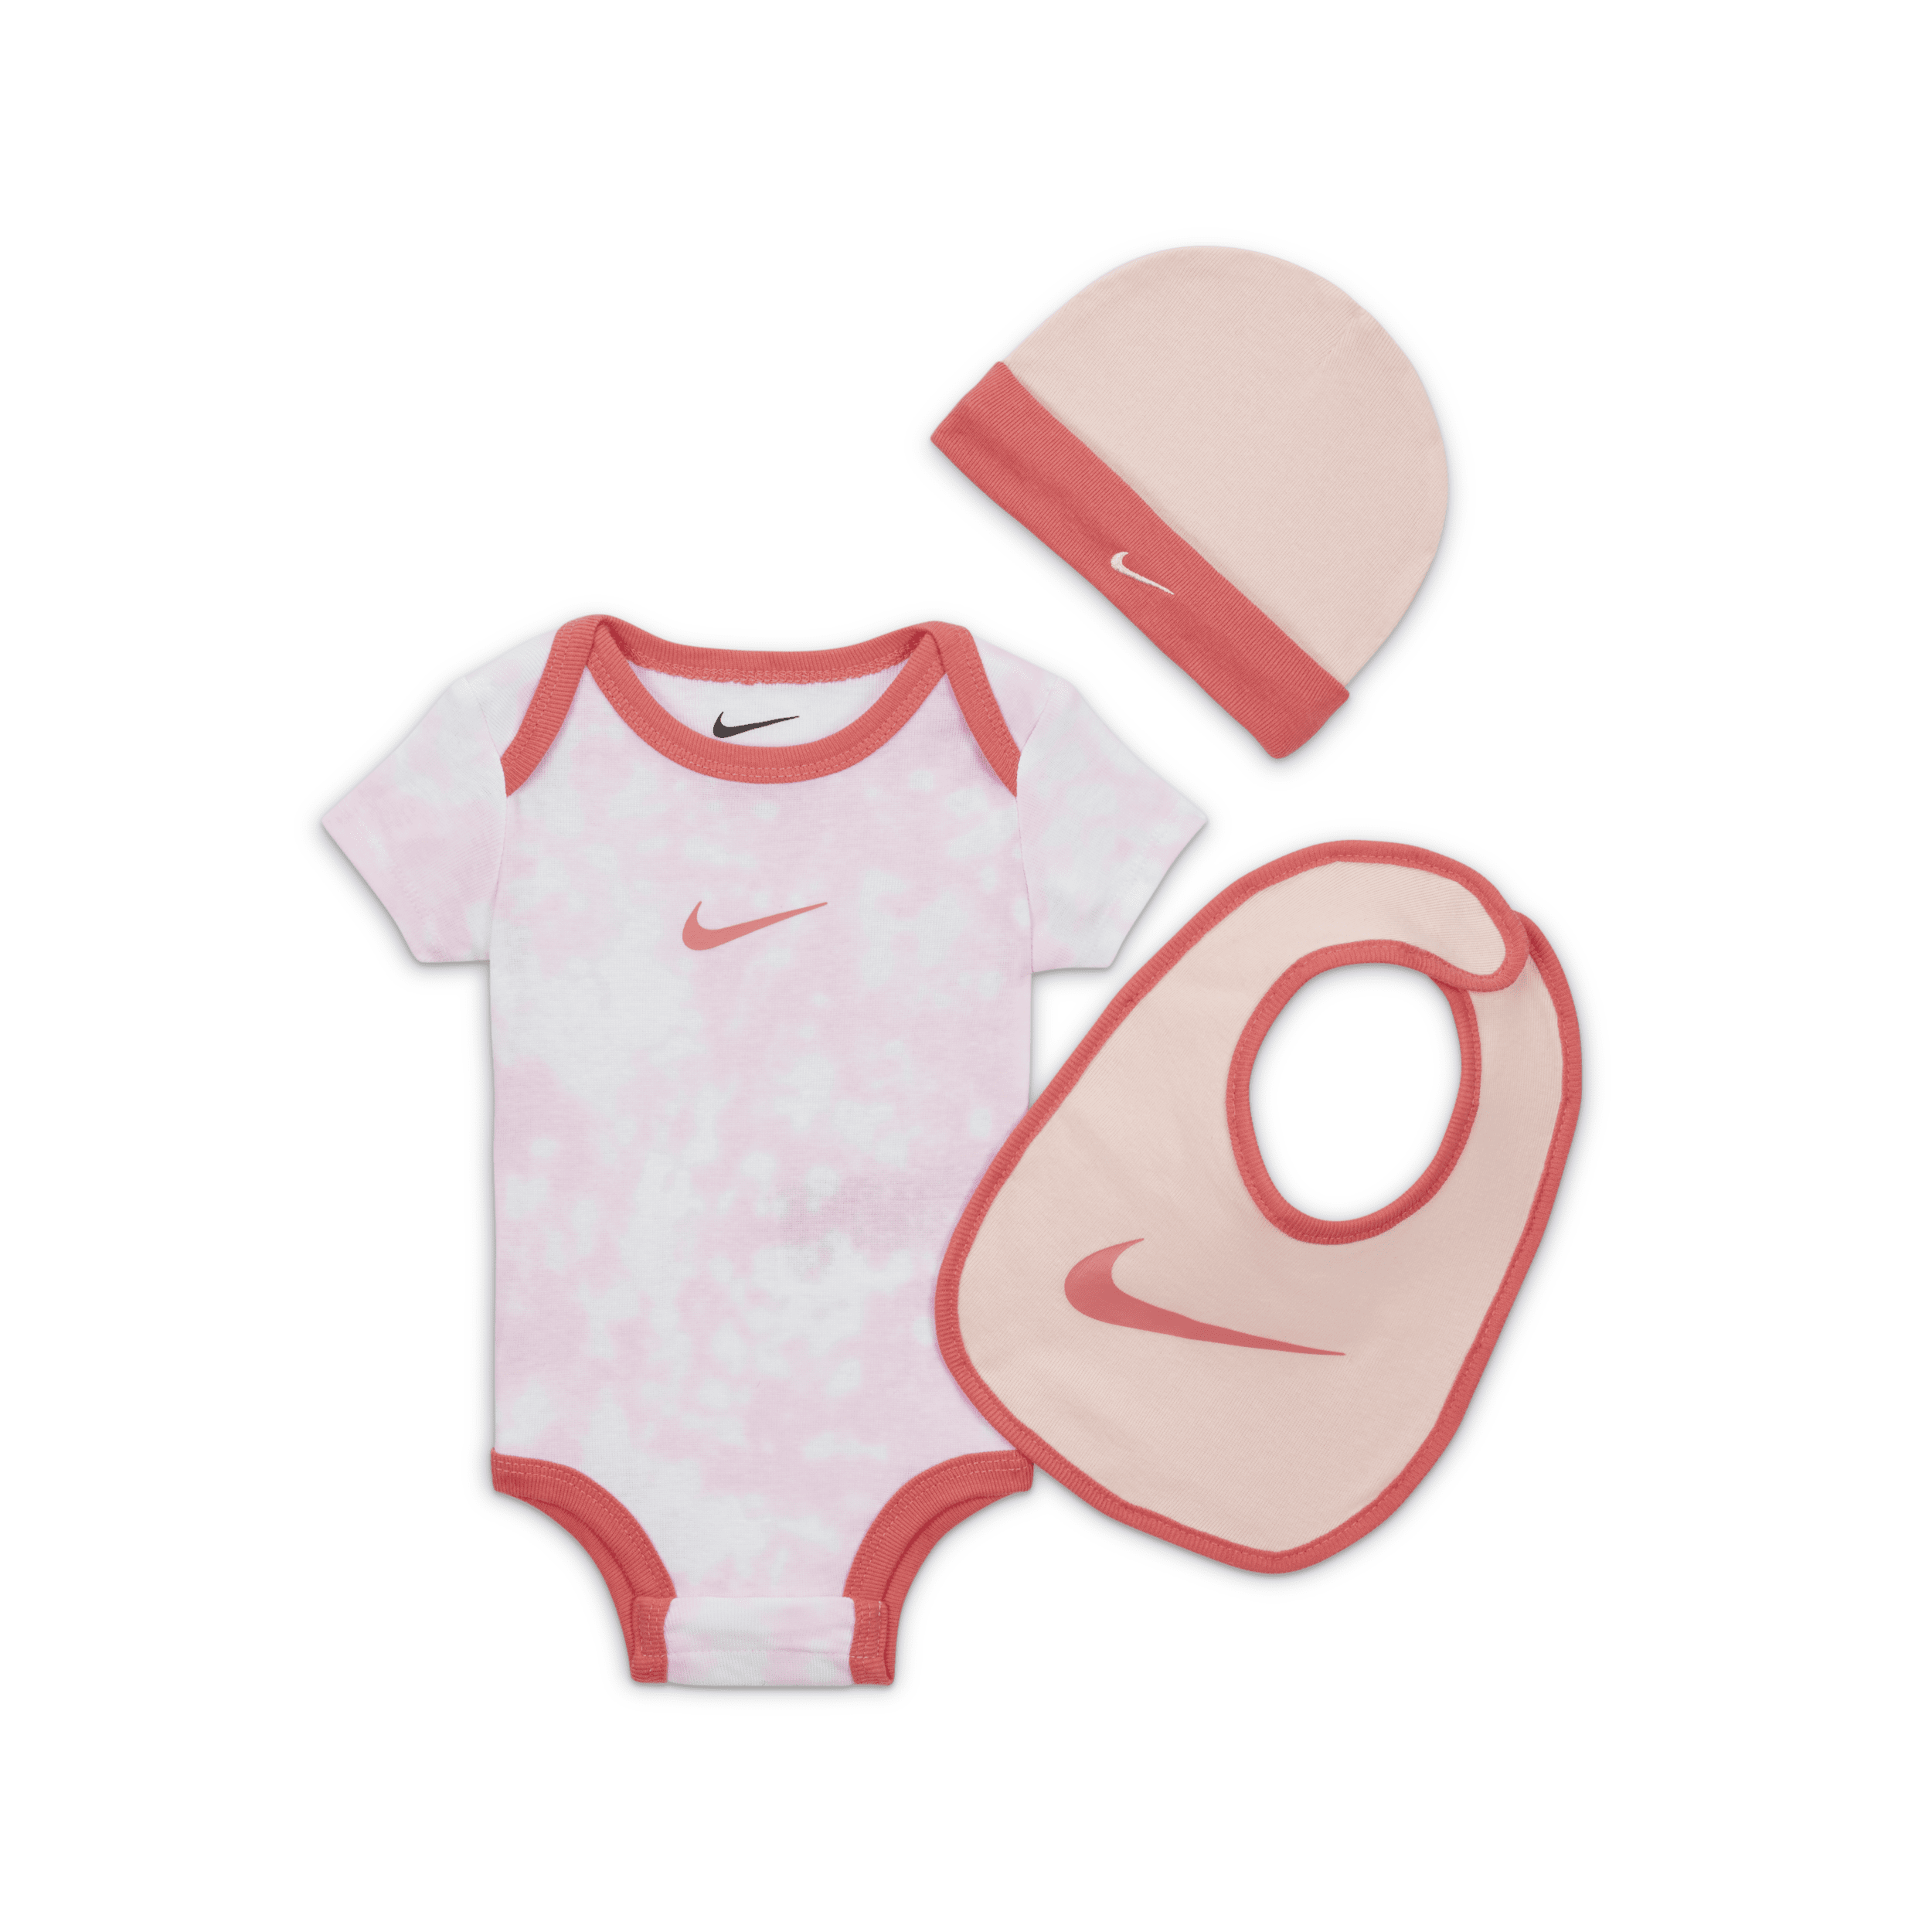 Nike Cloud Dye 3-piece Box Set Baby 3-piece Box Set In Pink